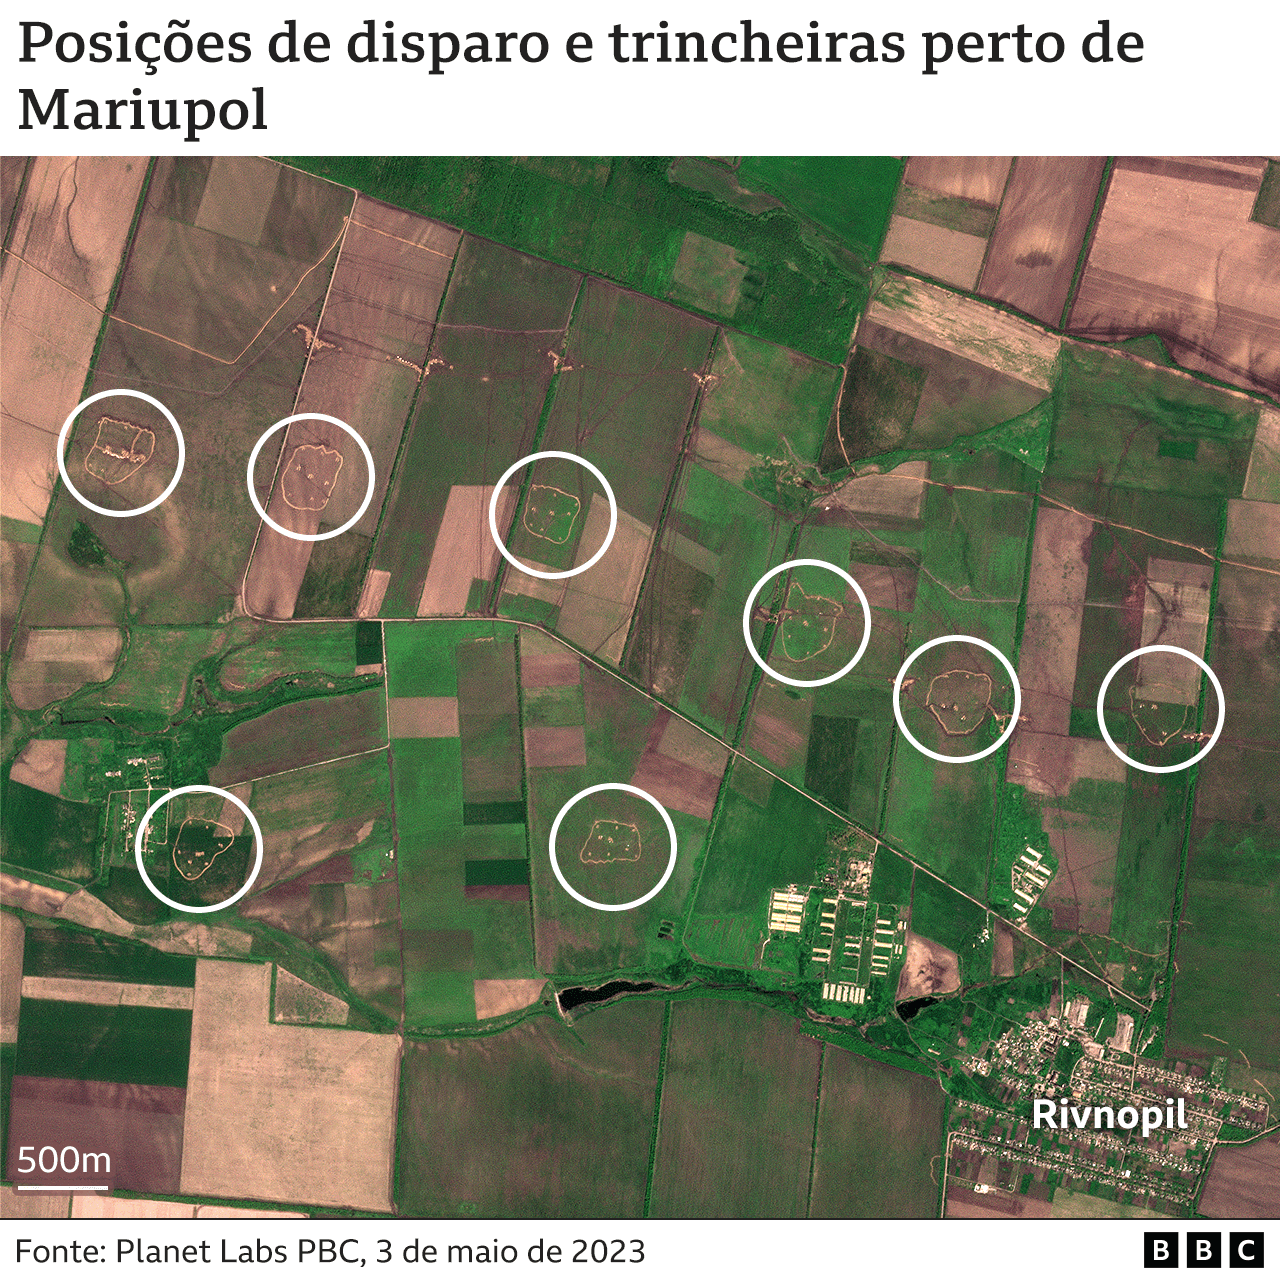 Imagem mostra posições de disparo e trincheiras perto de Mariupol